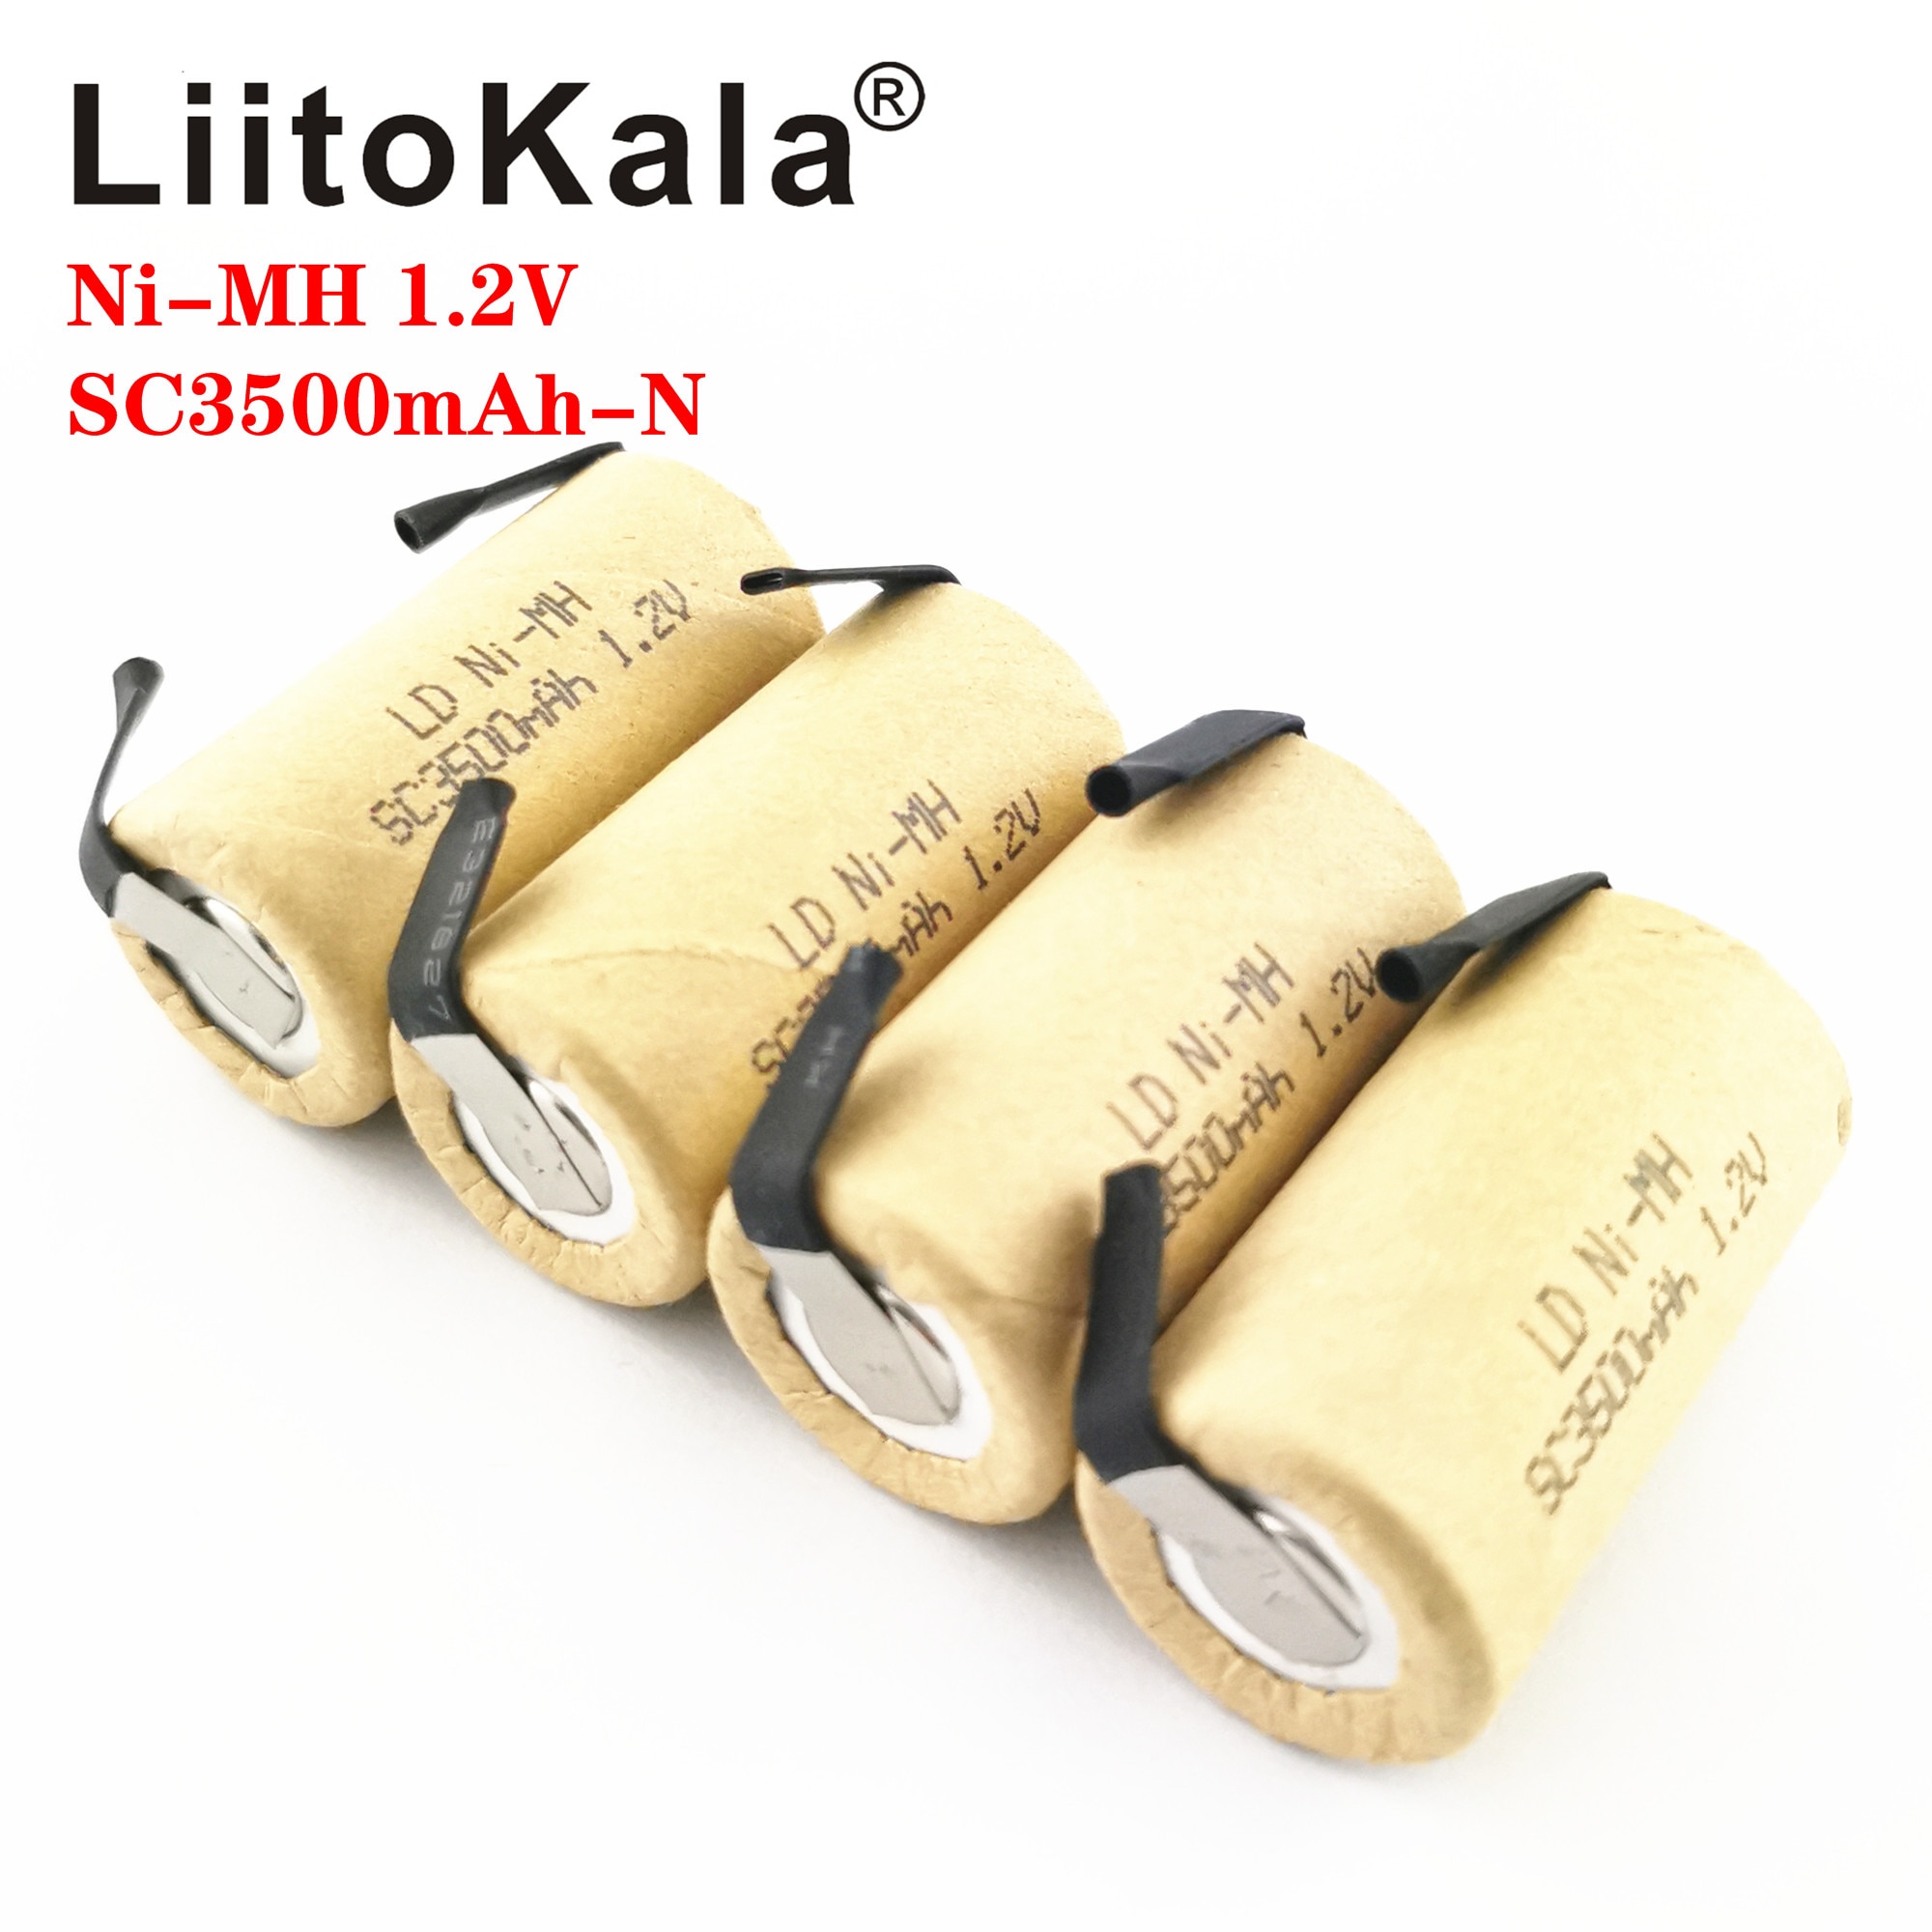 Liitokala Sc 3500Mah Ni-Mh 1.2V Oplaadbare Batterij Hoge Ontlading 10C 15C Voor Elektrische Gereedschap Power Tool Batterij diy Nicke